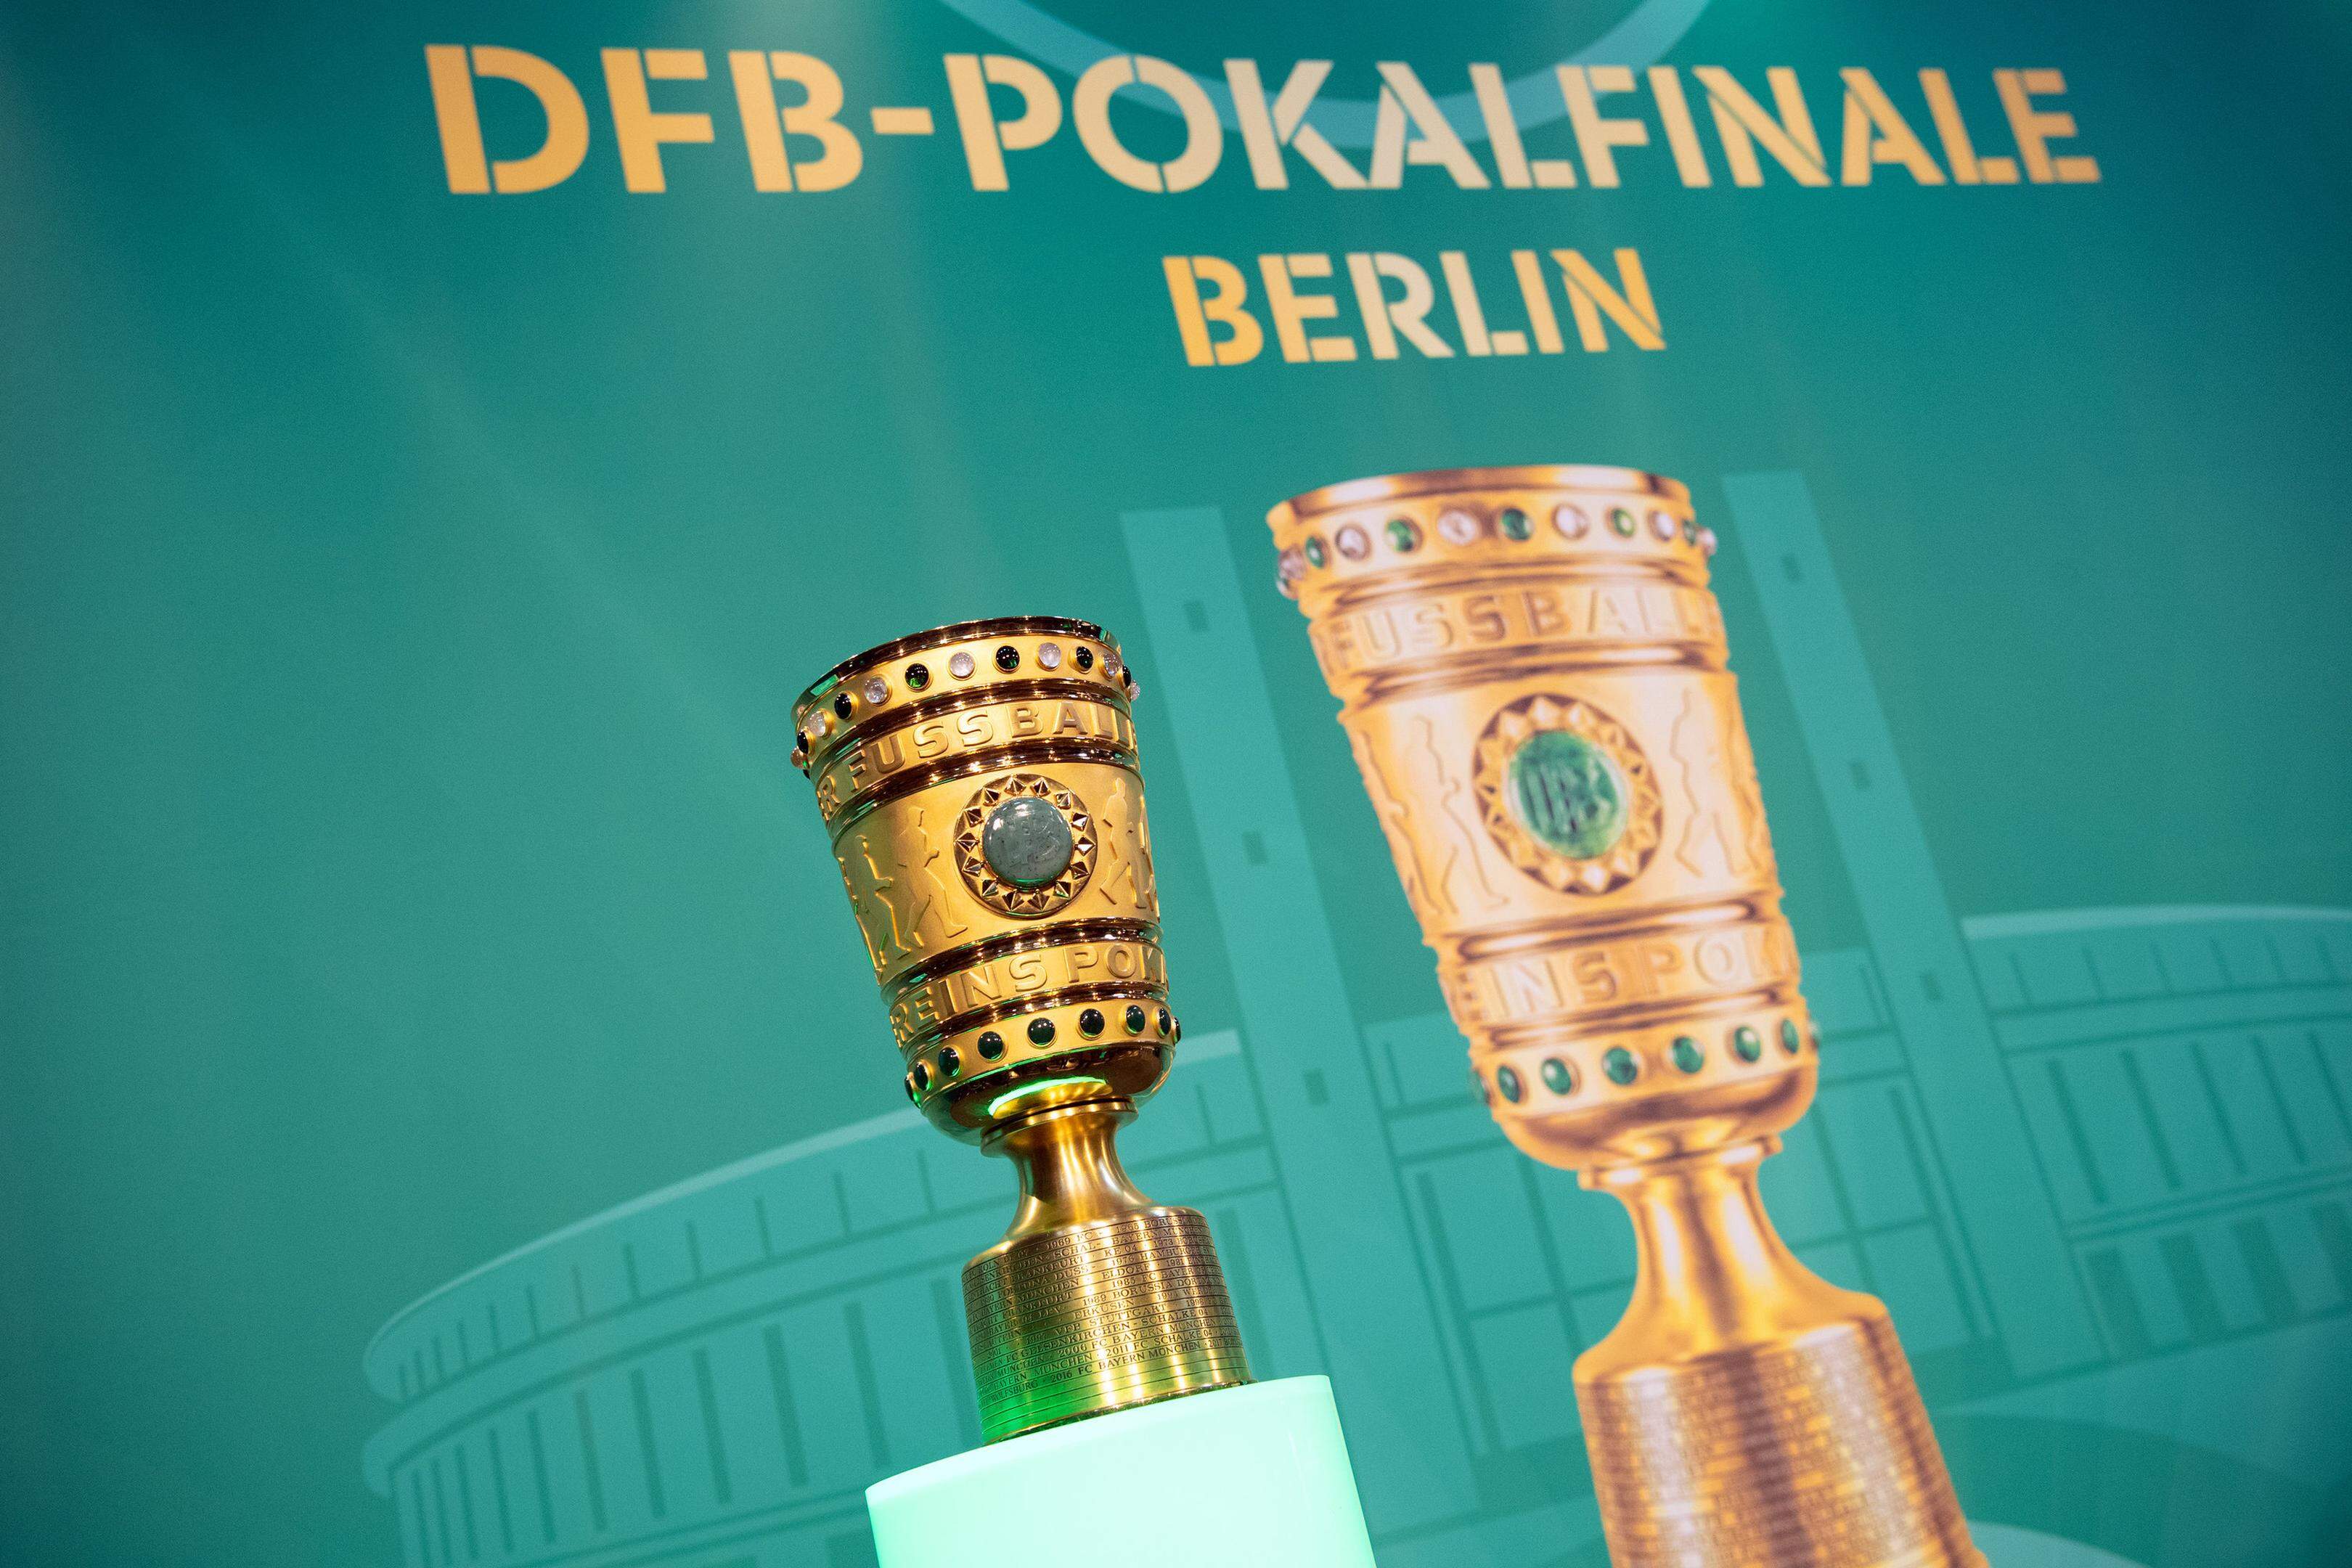 10.05.2019, Berlin: Fußball: DFB-Pokal, Cup Handover des DFB-Pokals. Der DFB-Pokal steht vor Beginn der Veranstaltung auf einem Sockel. Foto: Soeren Stache/dpa +++ dpa-Bildfunk +++